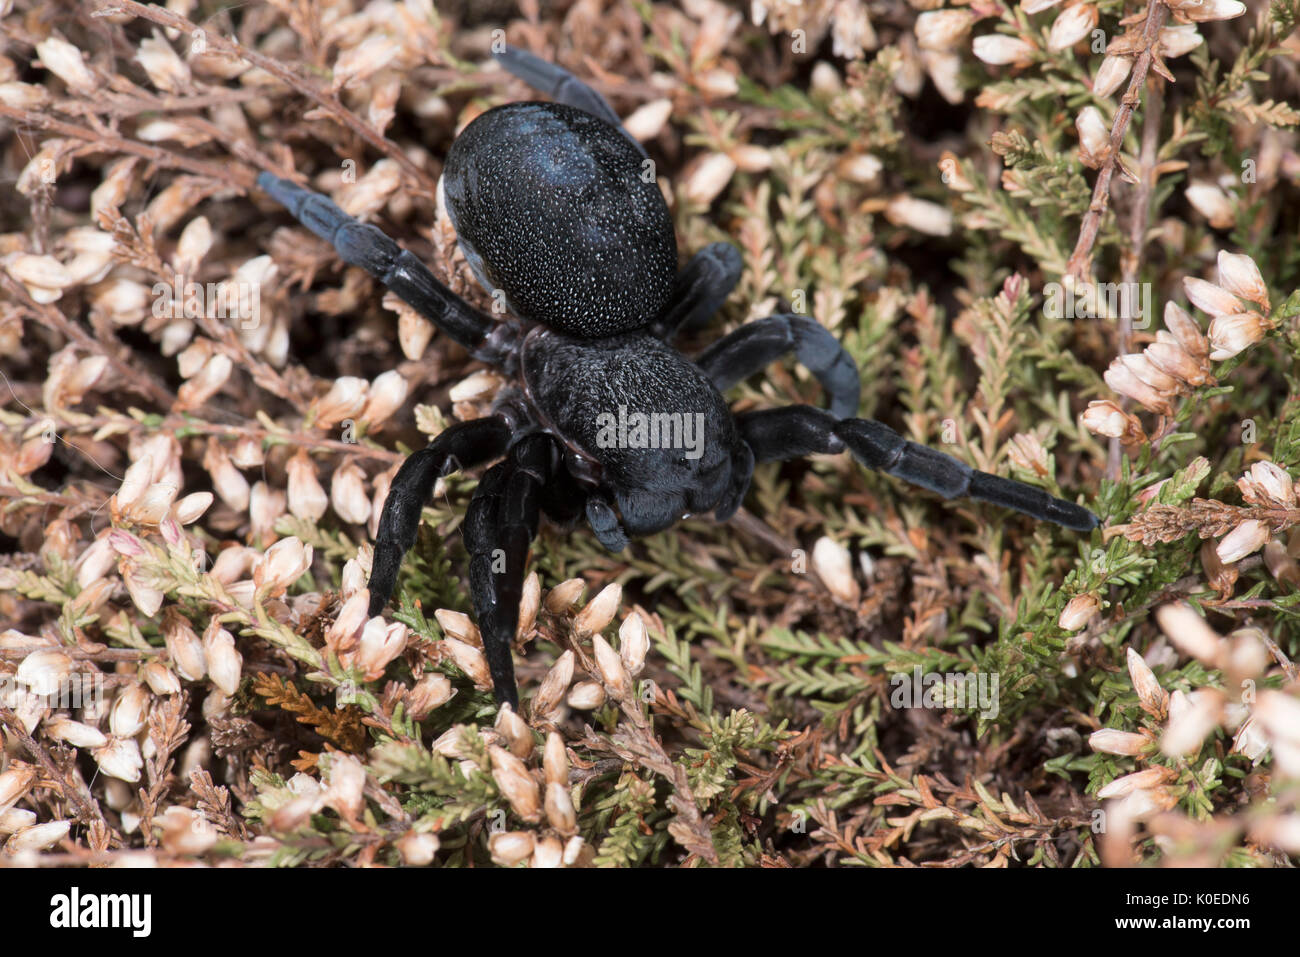 Ladybird Spider, Female, Eresus walckenaeri, on plant, Eastern Mediterranean Stock Photo